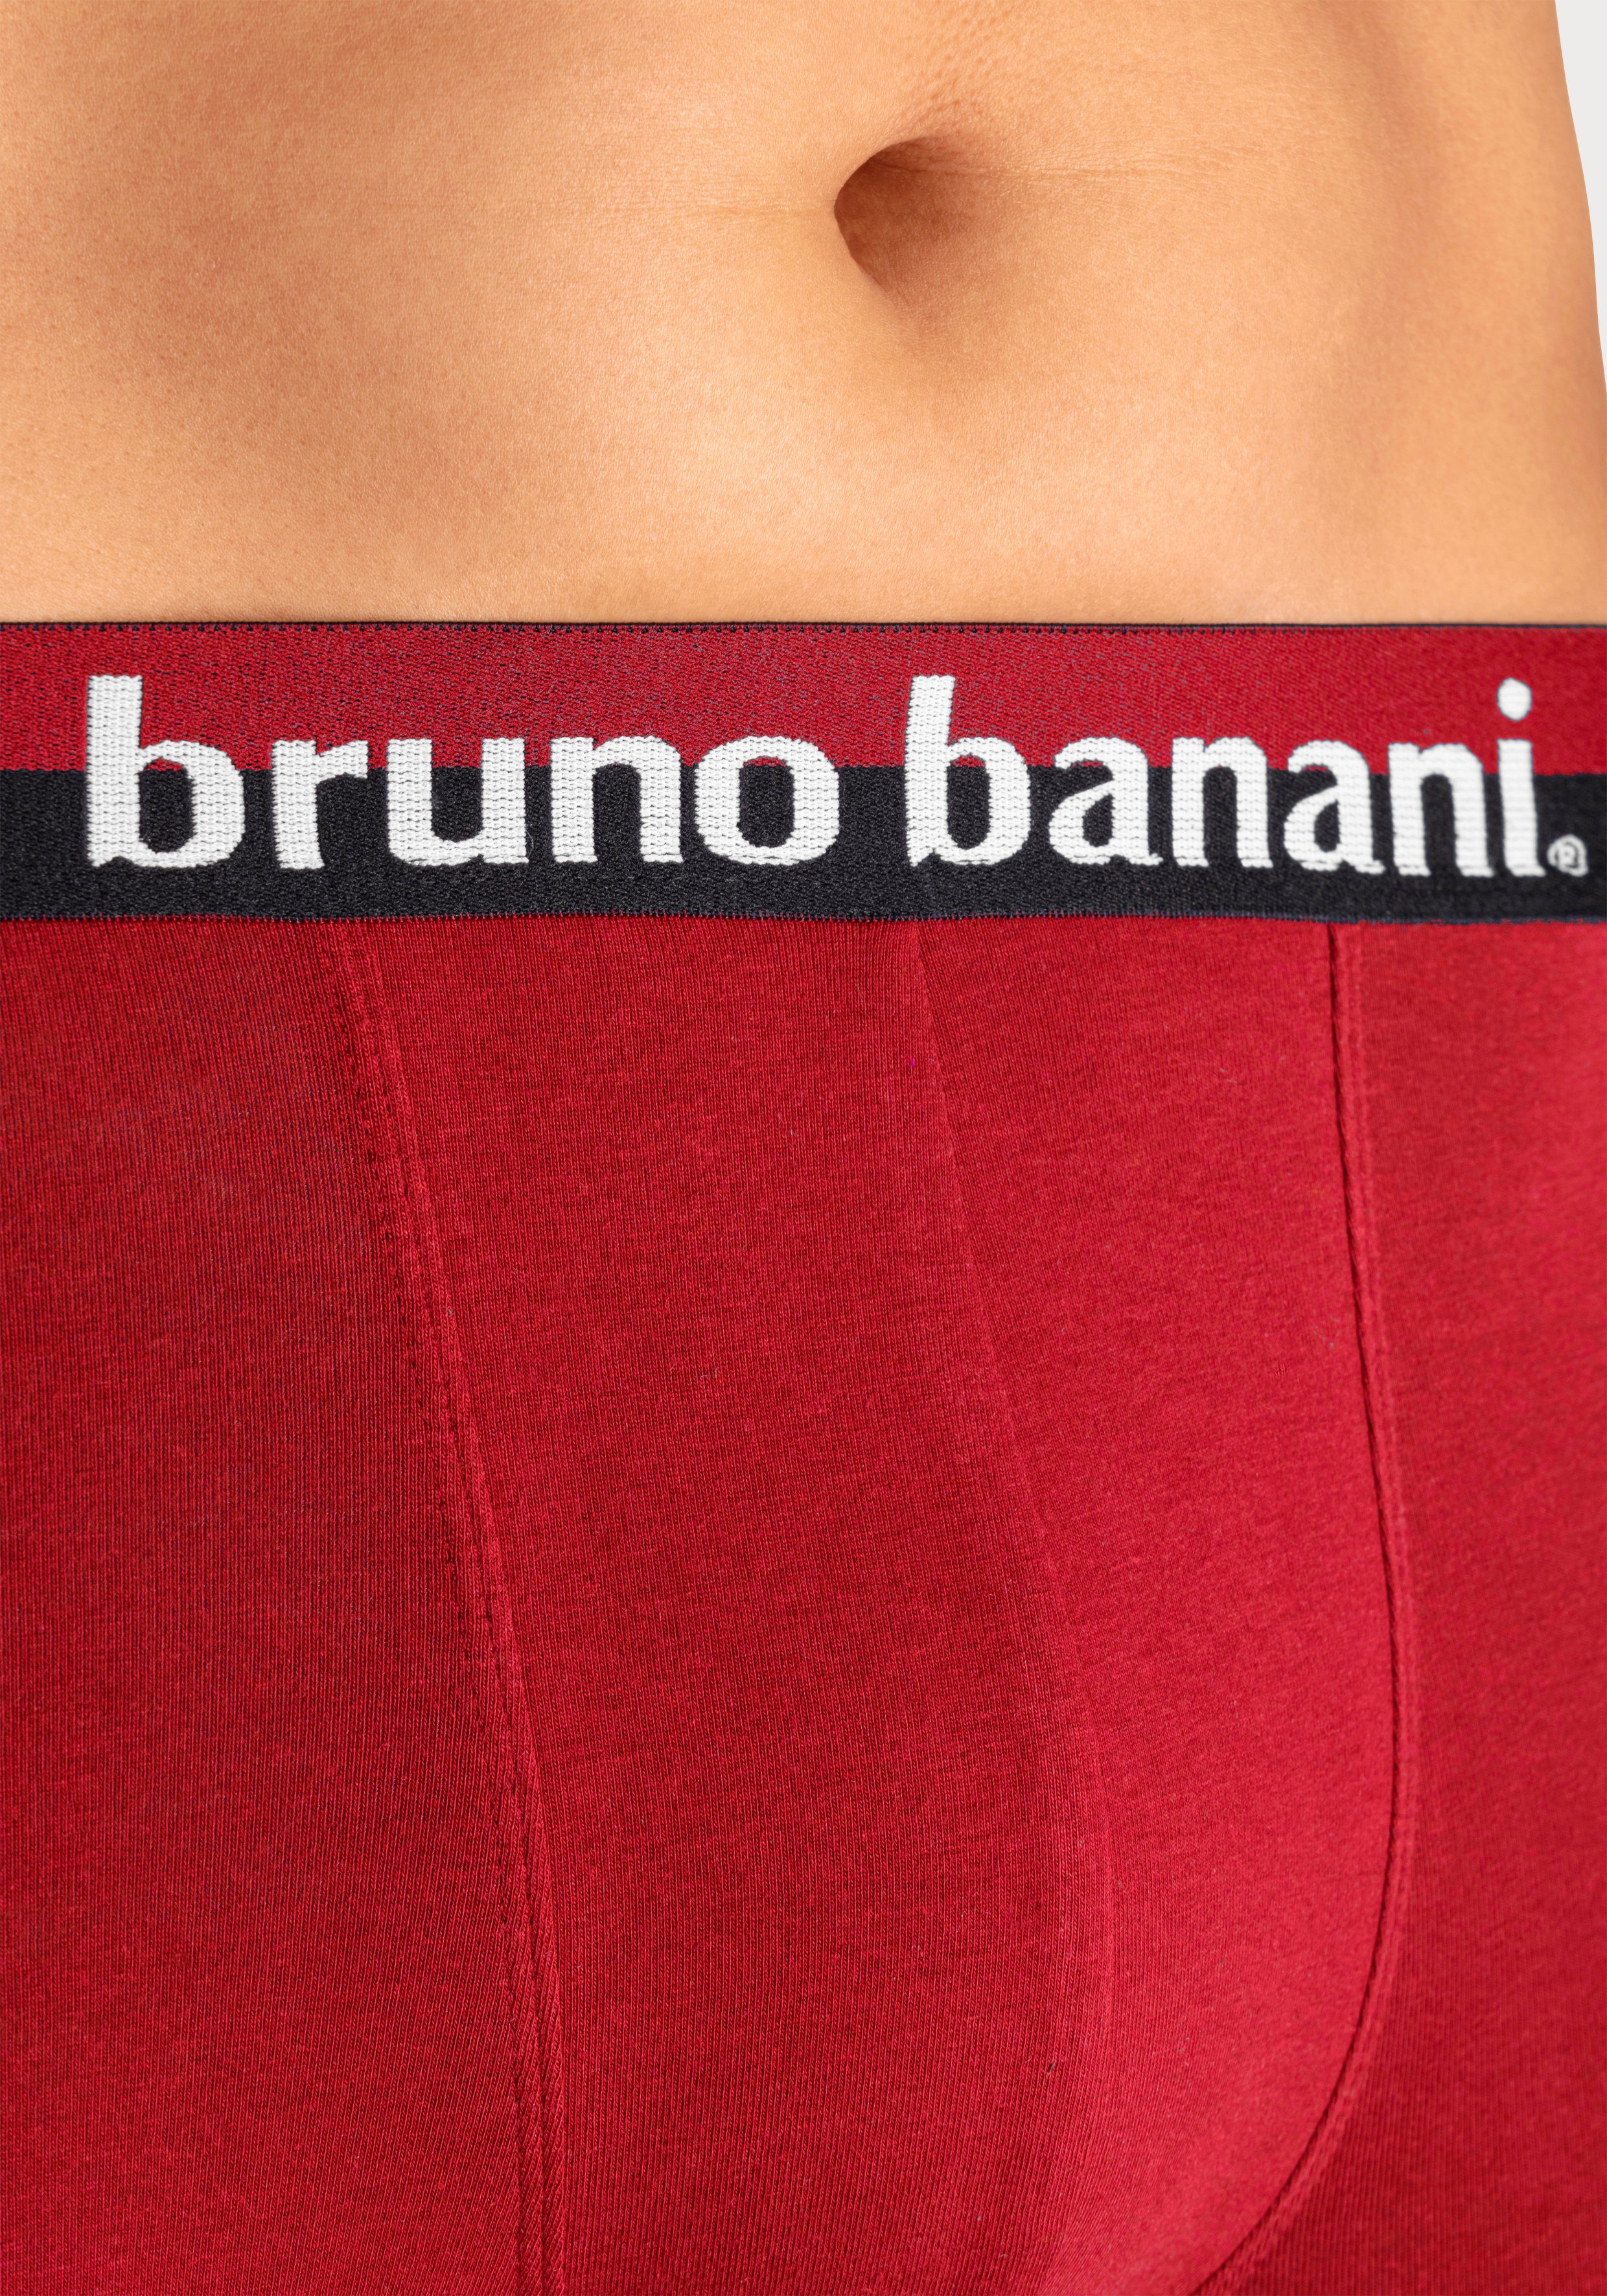 schwarz grau-meliert, Logo-Druck erhabenem 4-St) rot, bordeaux, mit (Packung, auf dem Banani Bund Bruno Boxer